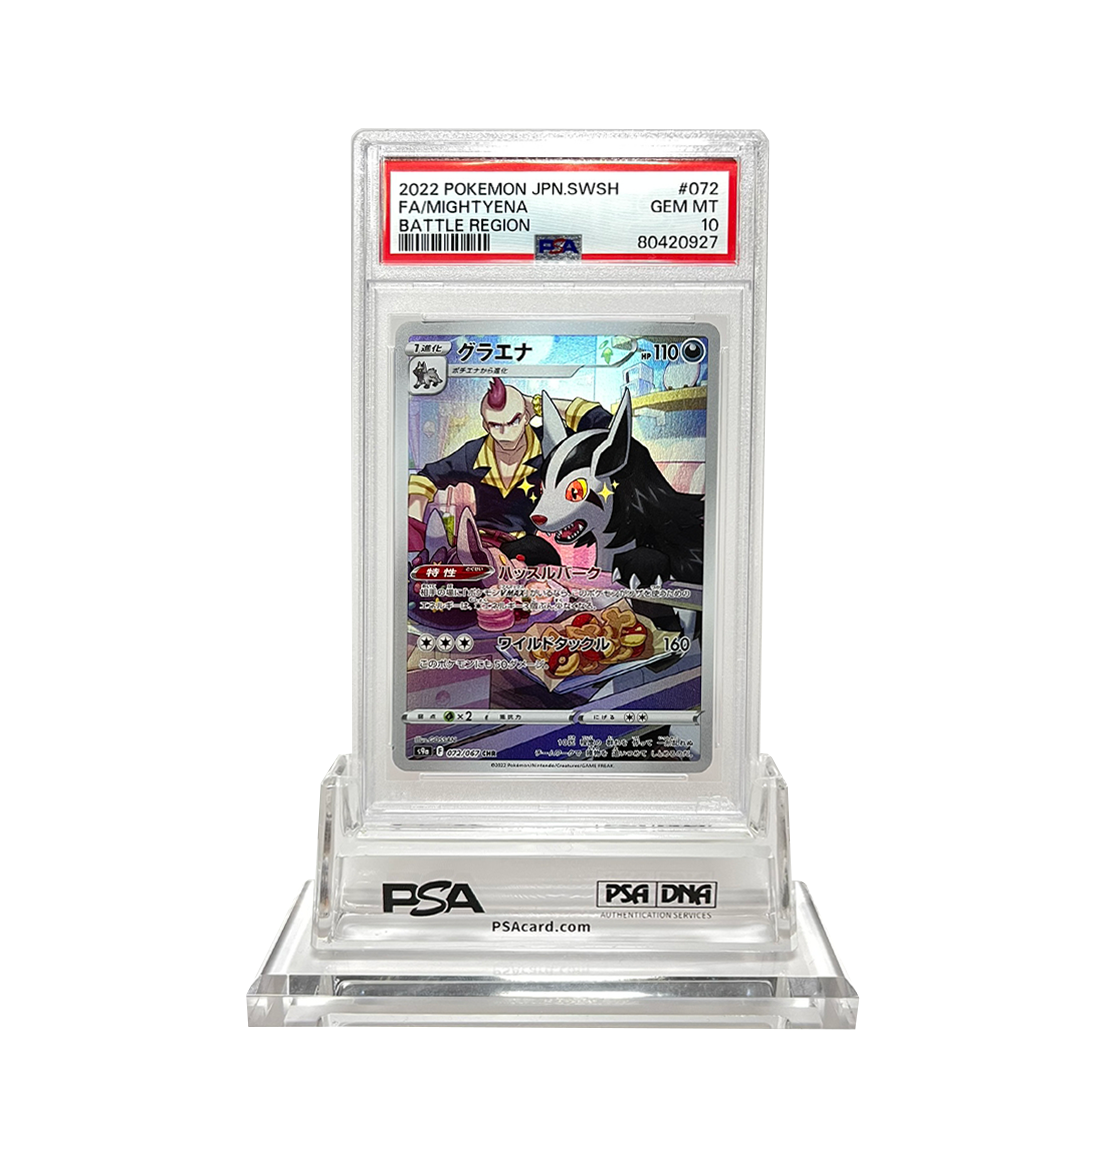 PSA 10 Mightyena 072 Battle Region s9a Pokemon card